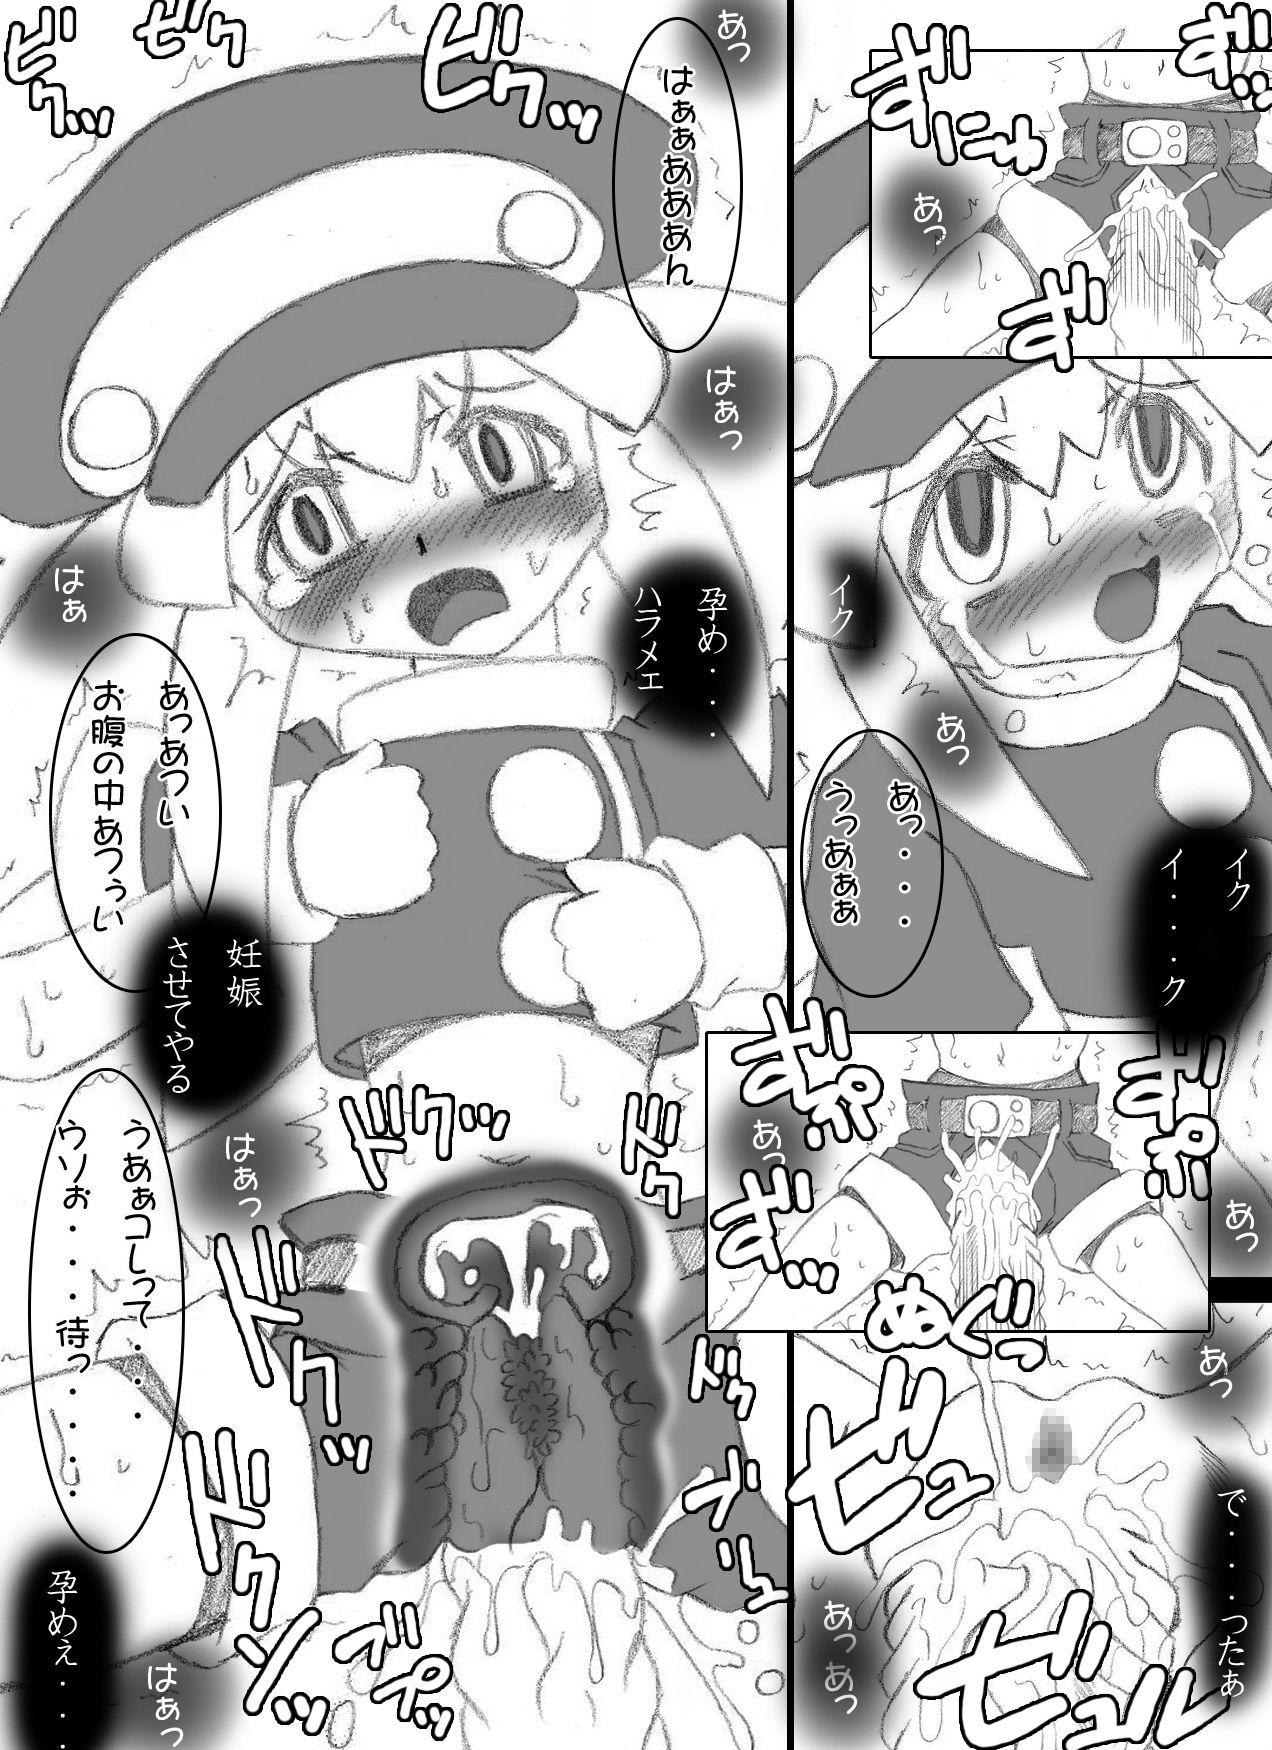 Amatuer Atataka na Chitsu no Naka no Soushitsu - Mega man legends Culito - Page 6